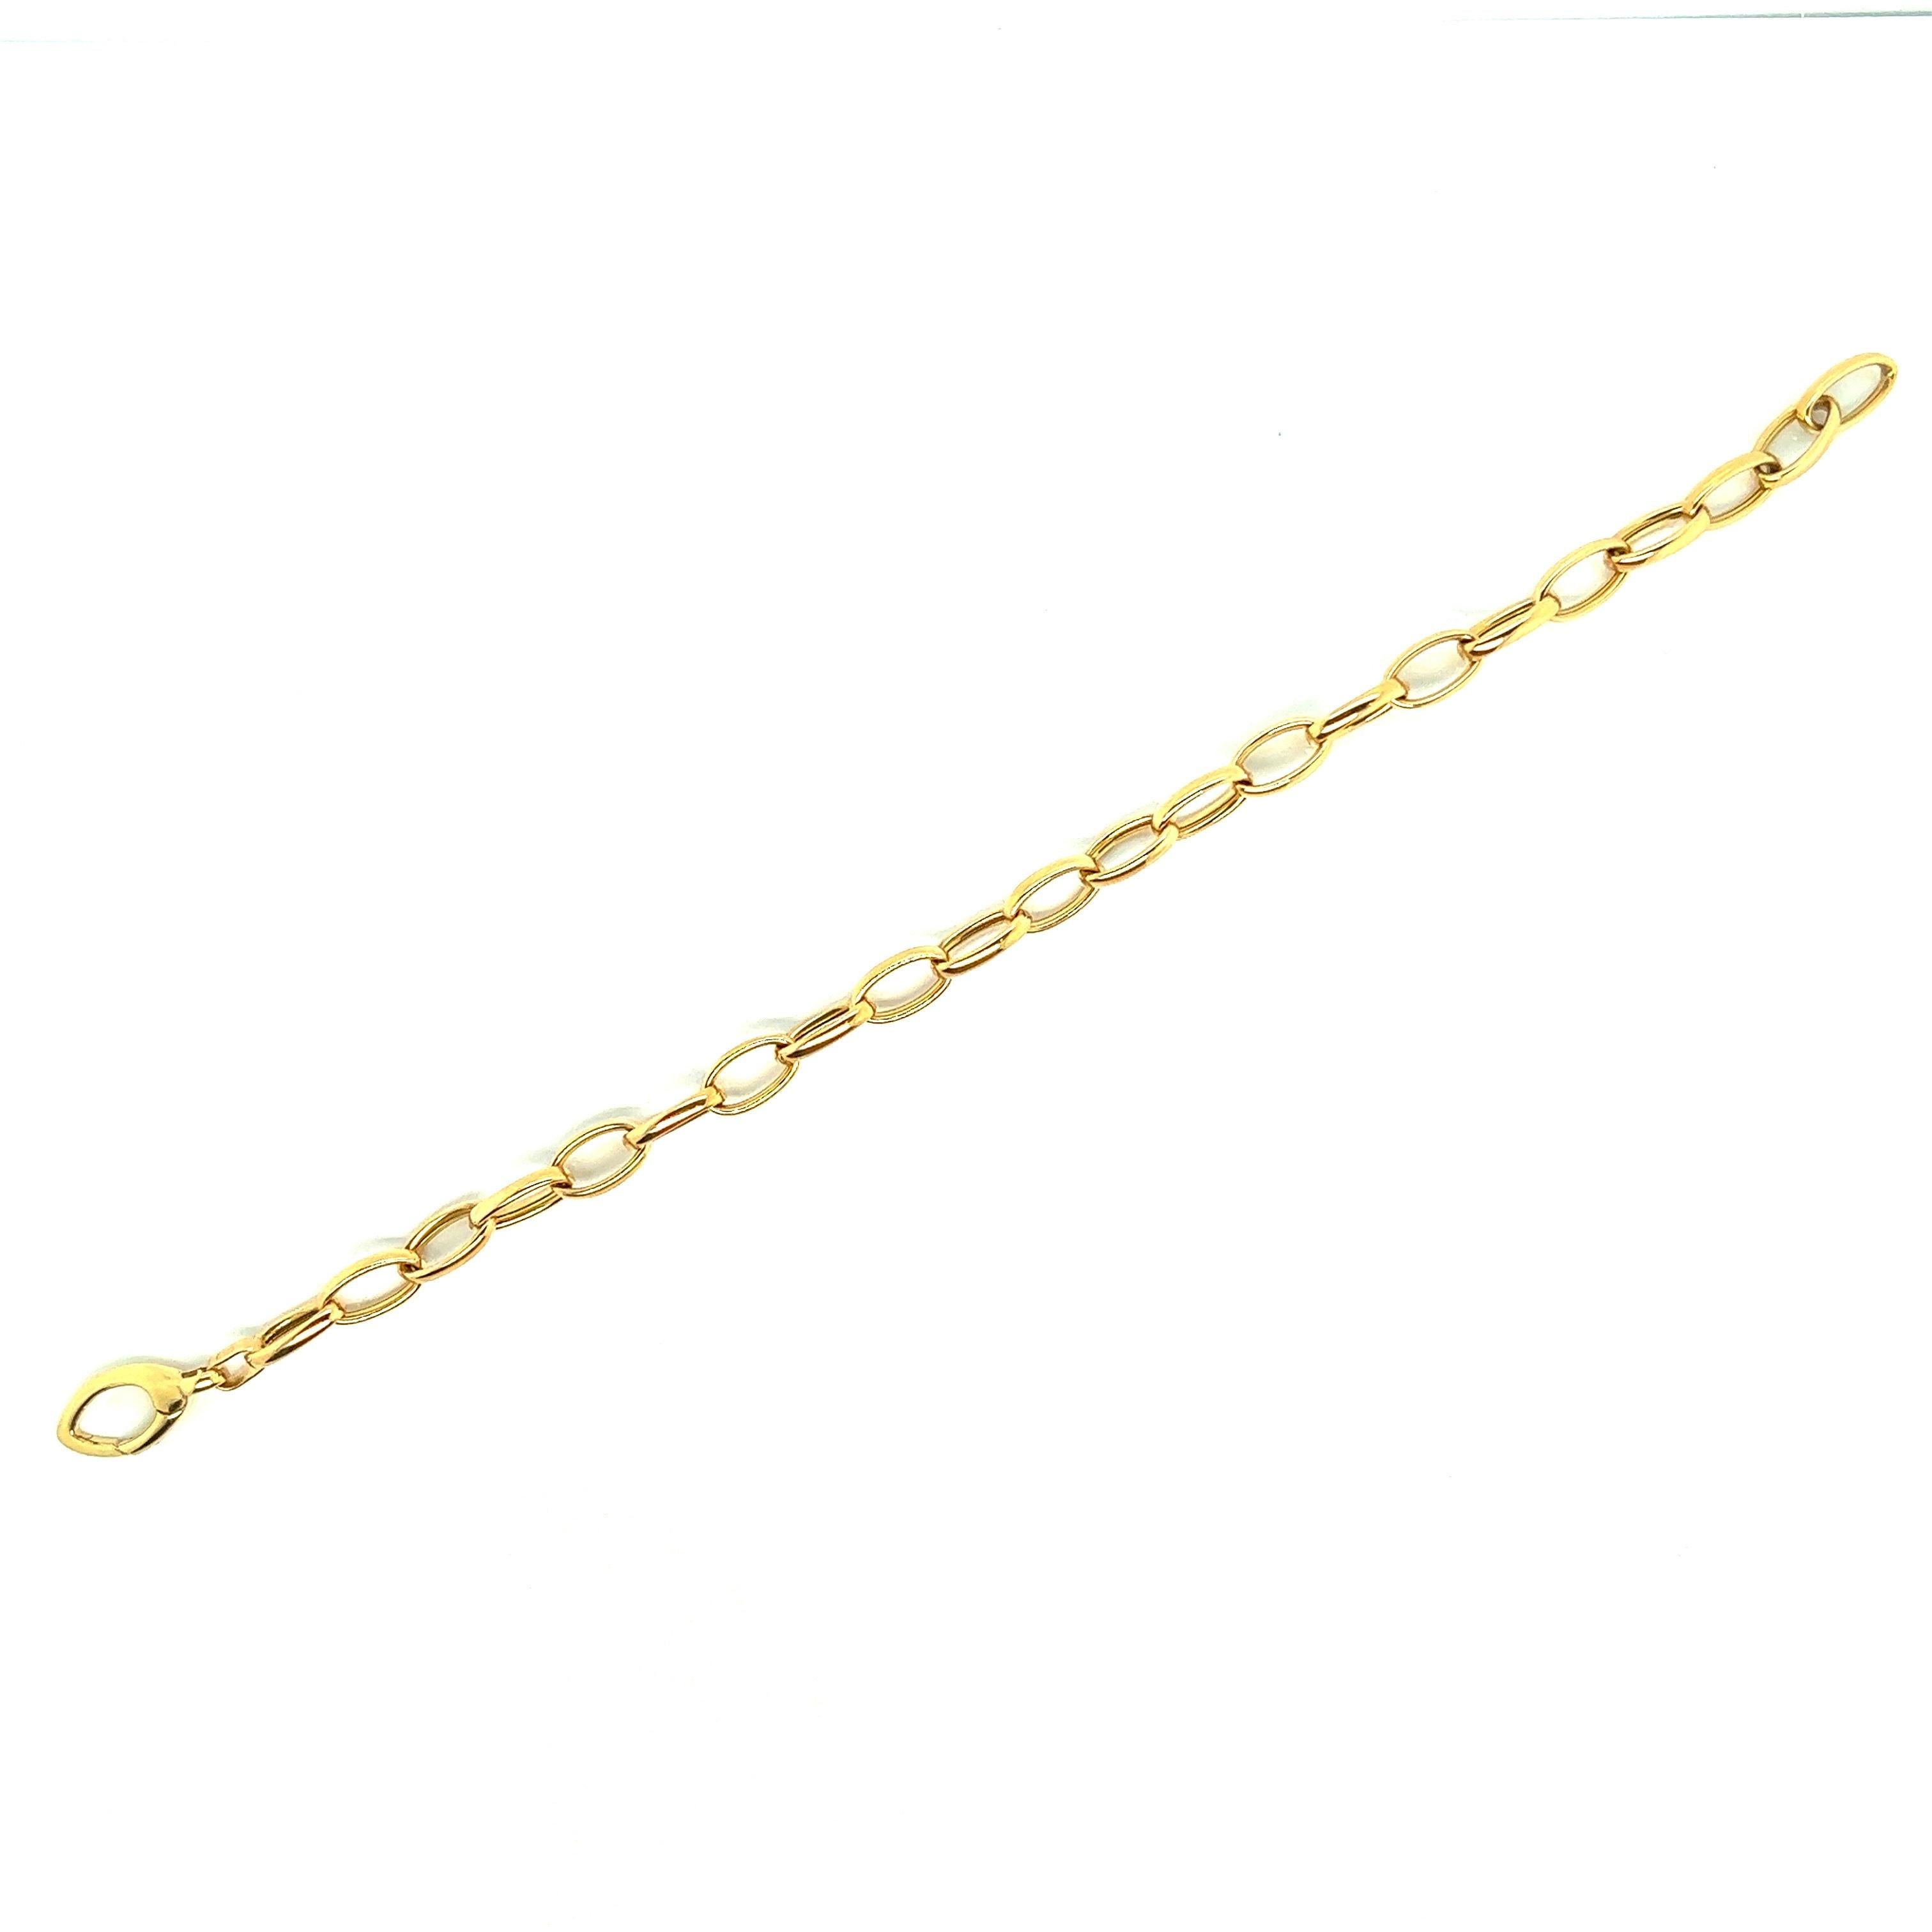 Découvrez ce superbe bracelet en or jaune 18 carats à petits maillons français. Ce bracelet à la fois élégant et raffiné apporte une touche de classe à votre look. Grâce à son design soigné, il offre un style chic et intemporel.

Le bracelet est